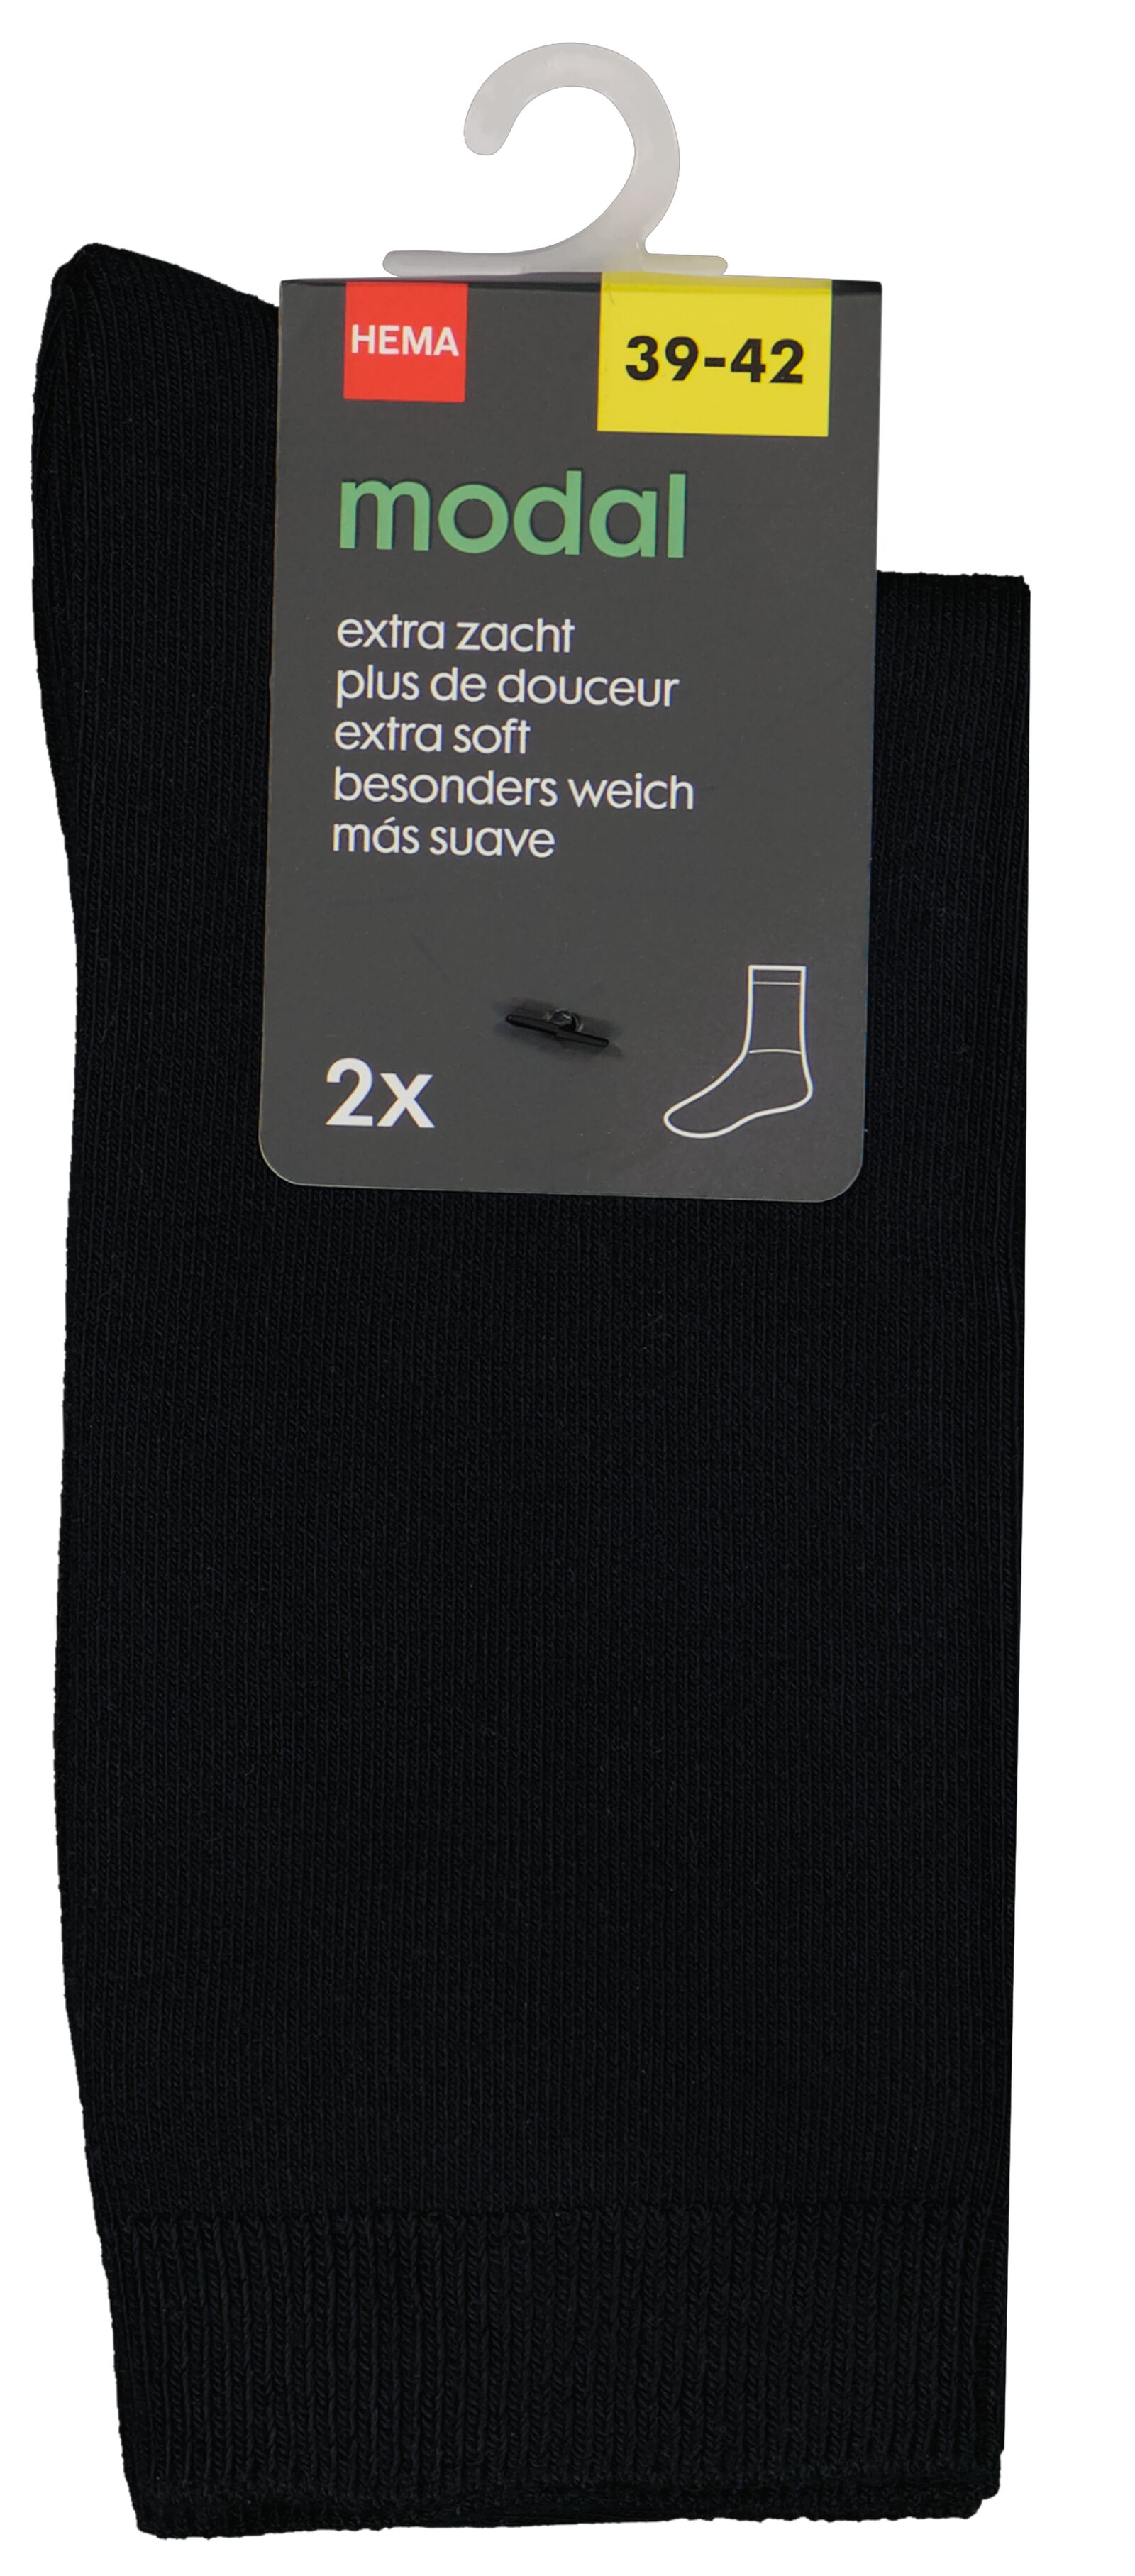 2er-Pack Damen-Socken mit Modal schwarz 35/38 - 4250516 - HEMA